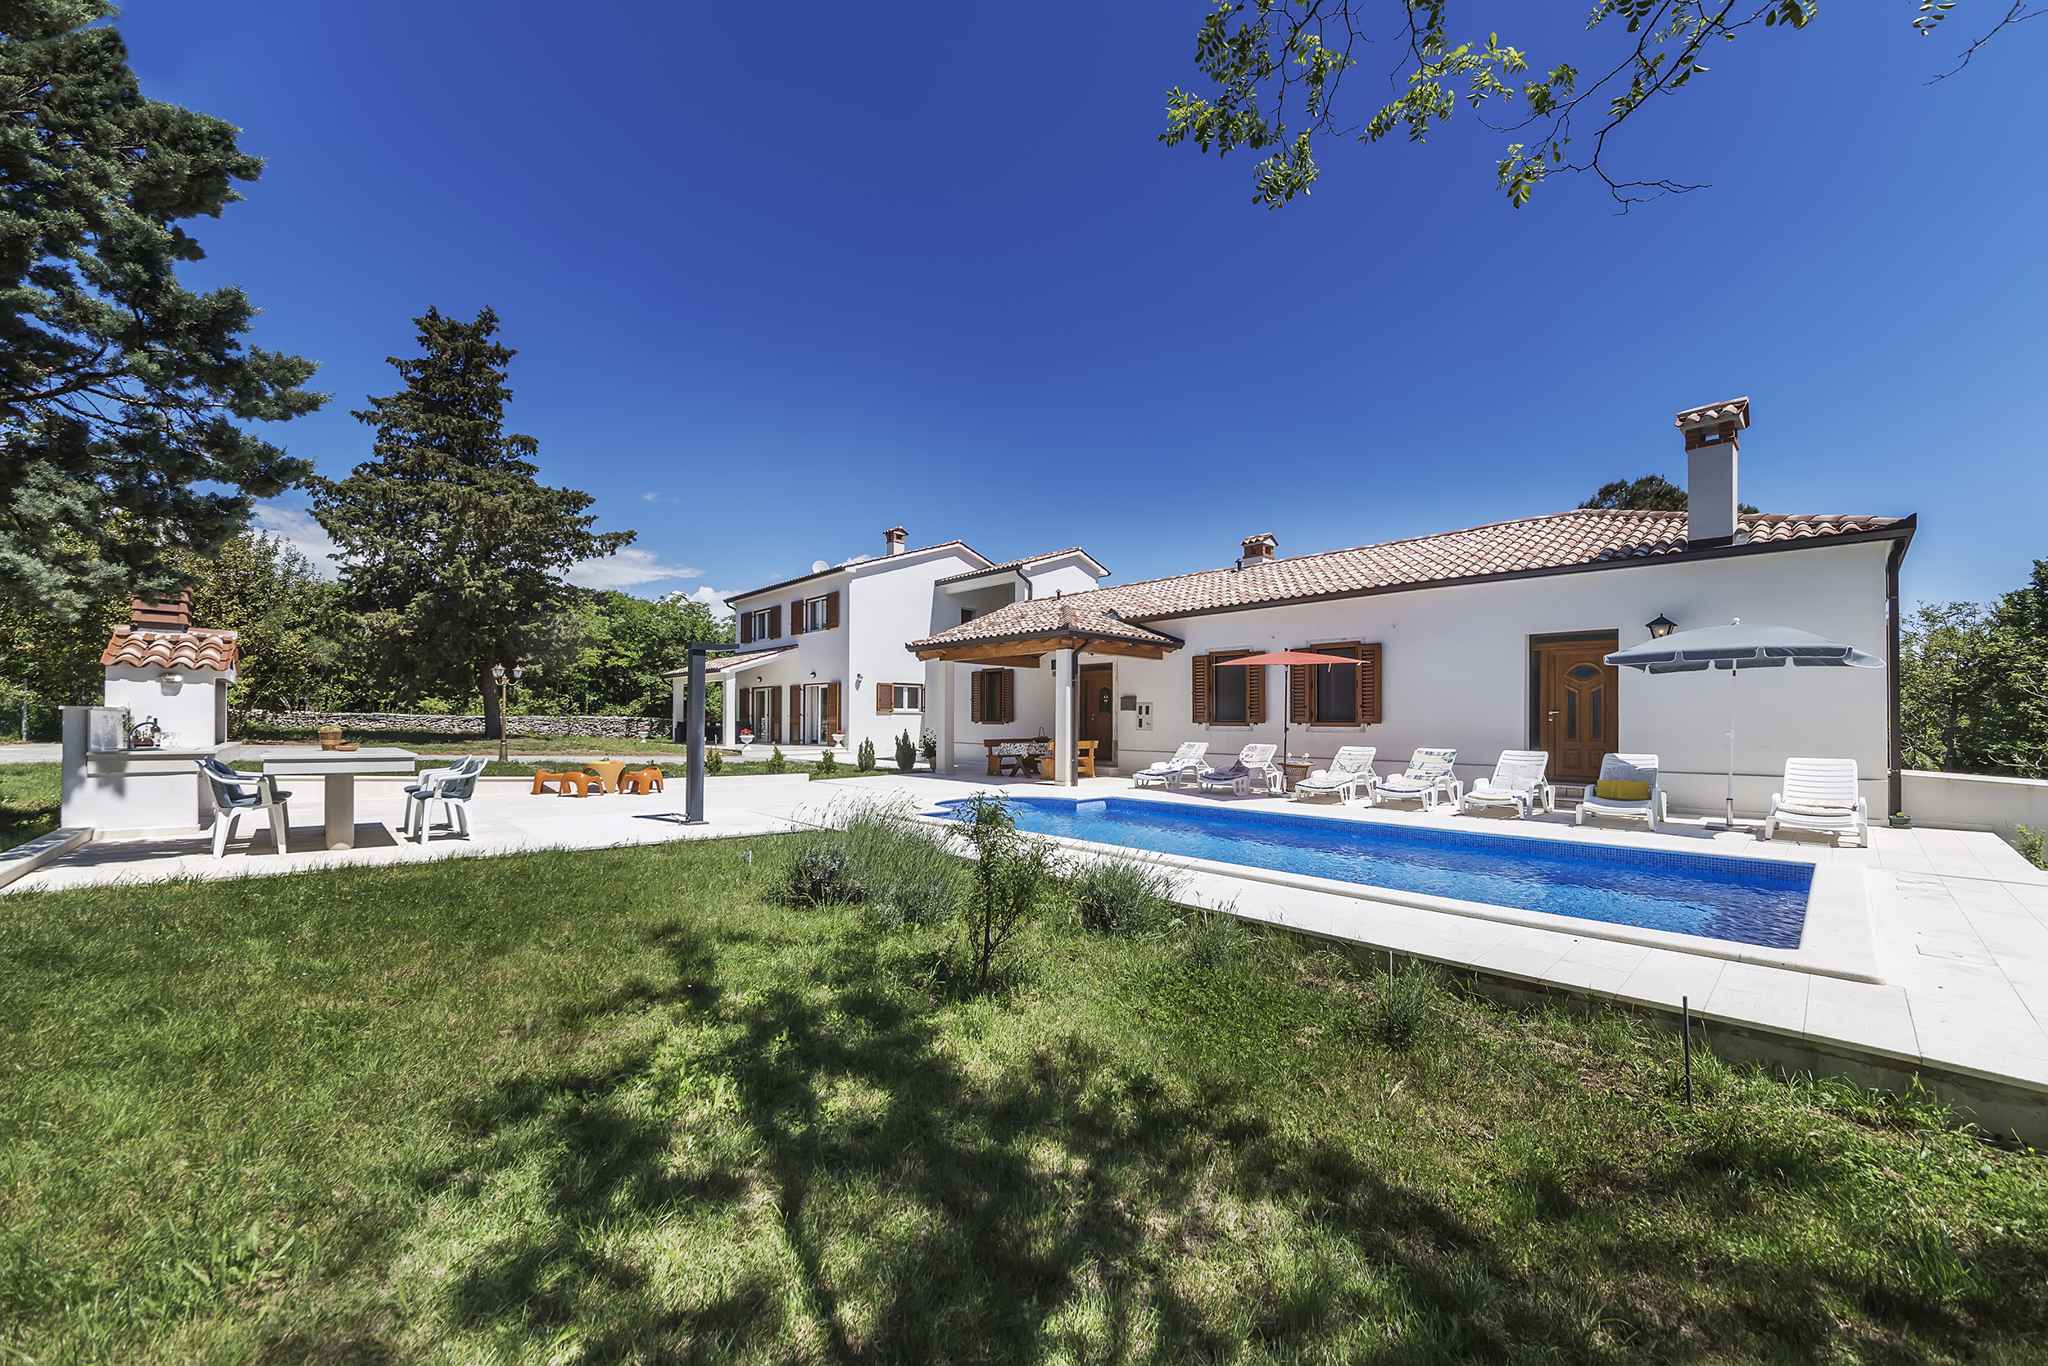 Villa mit Pool auf großem Grundstück Ferienhaus in Europa